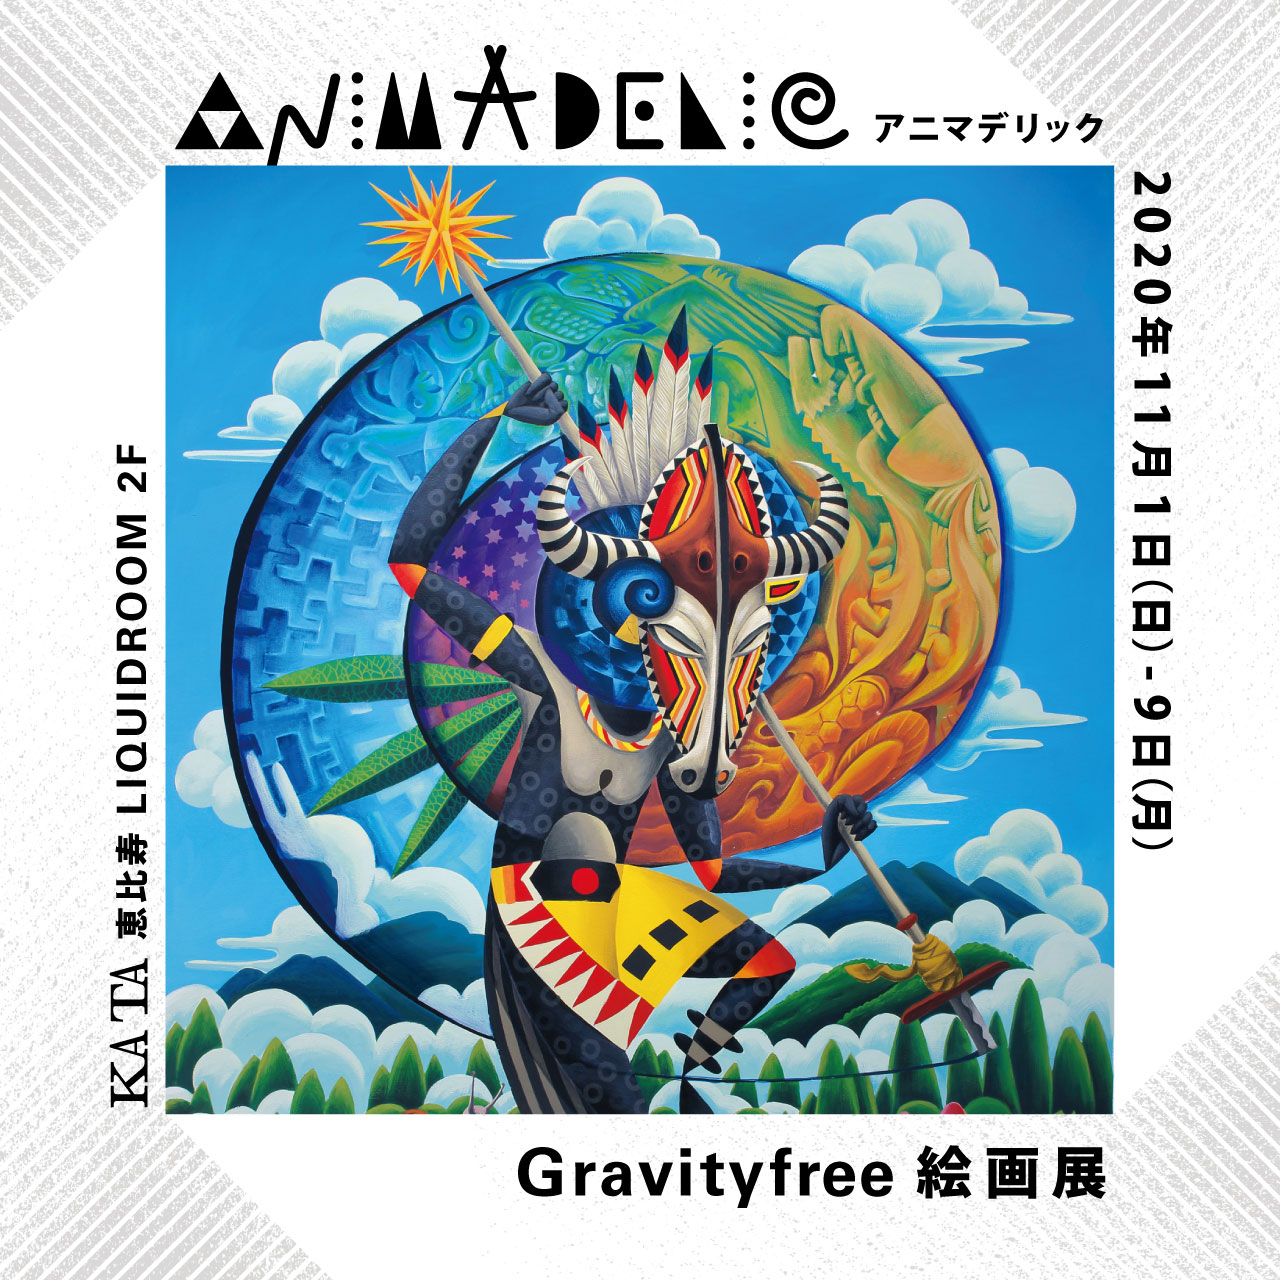 “ANIMADELIC Gravityfree Solo Exhibition”